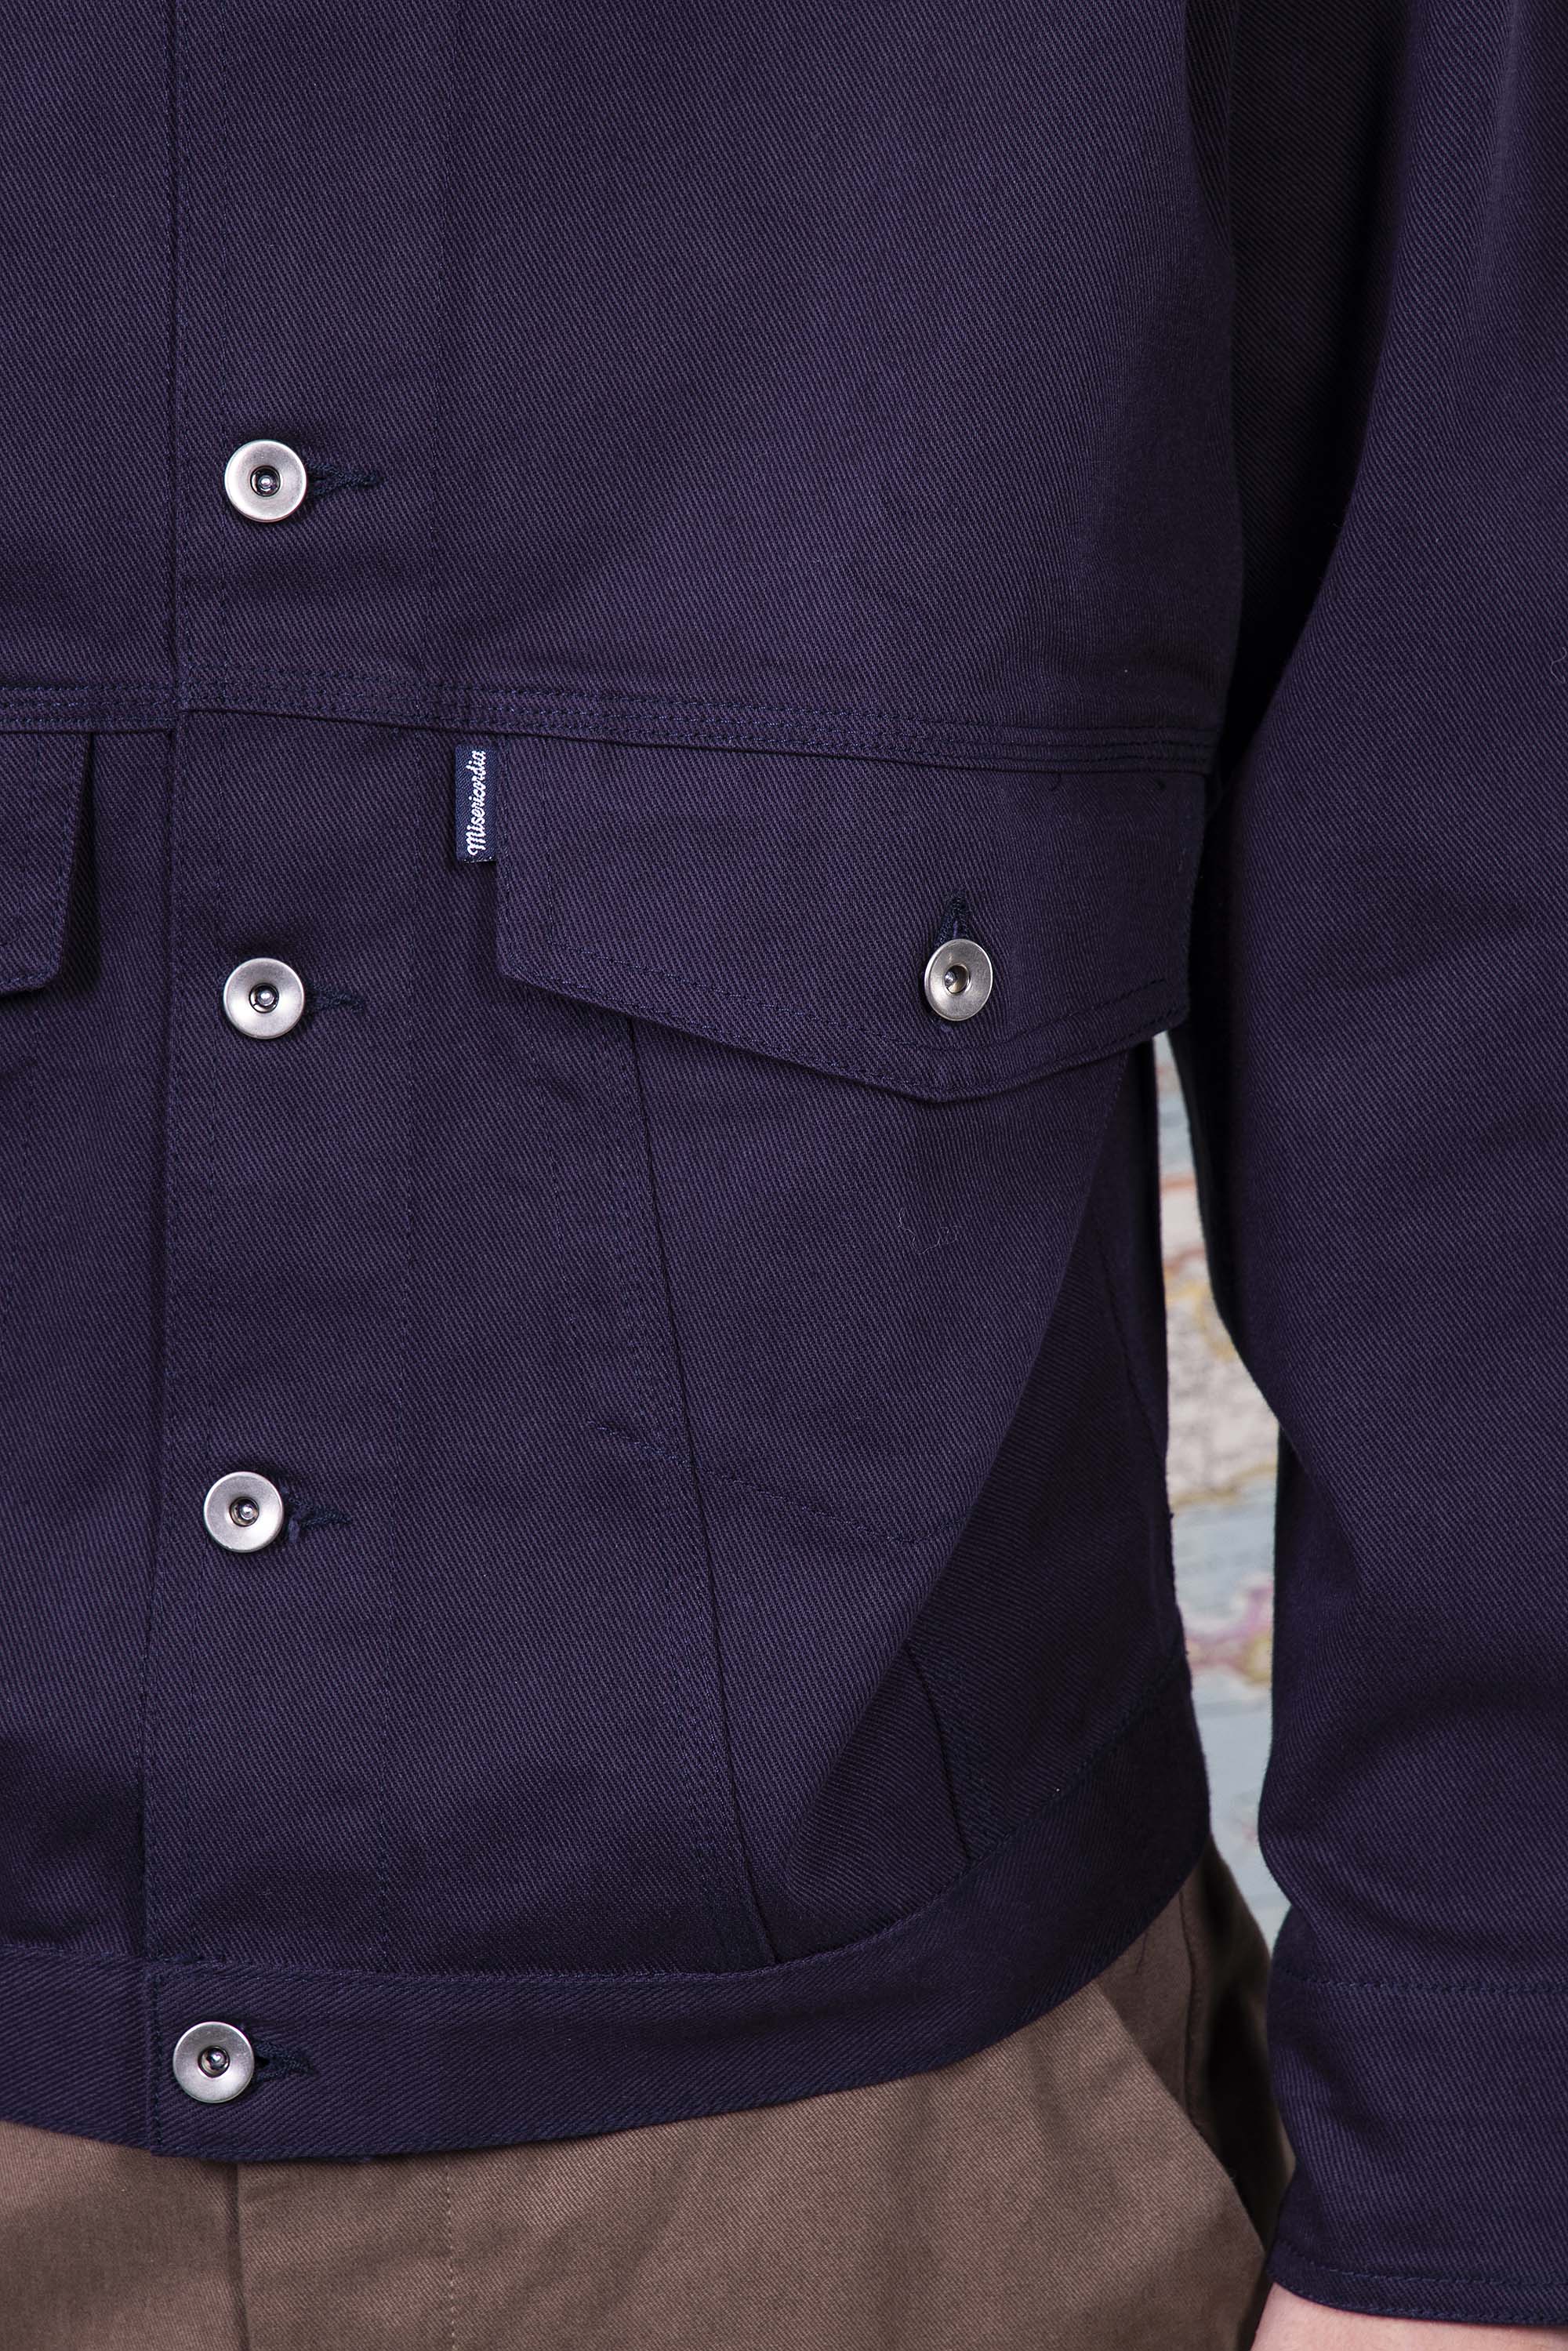 Manteau Rafael Bleu Marine outerwear résistant et authentique avec une finition impeccable